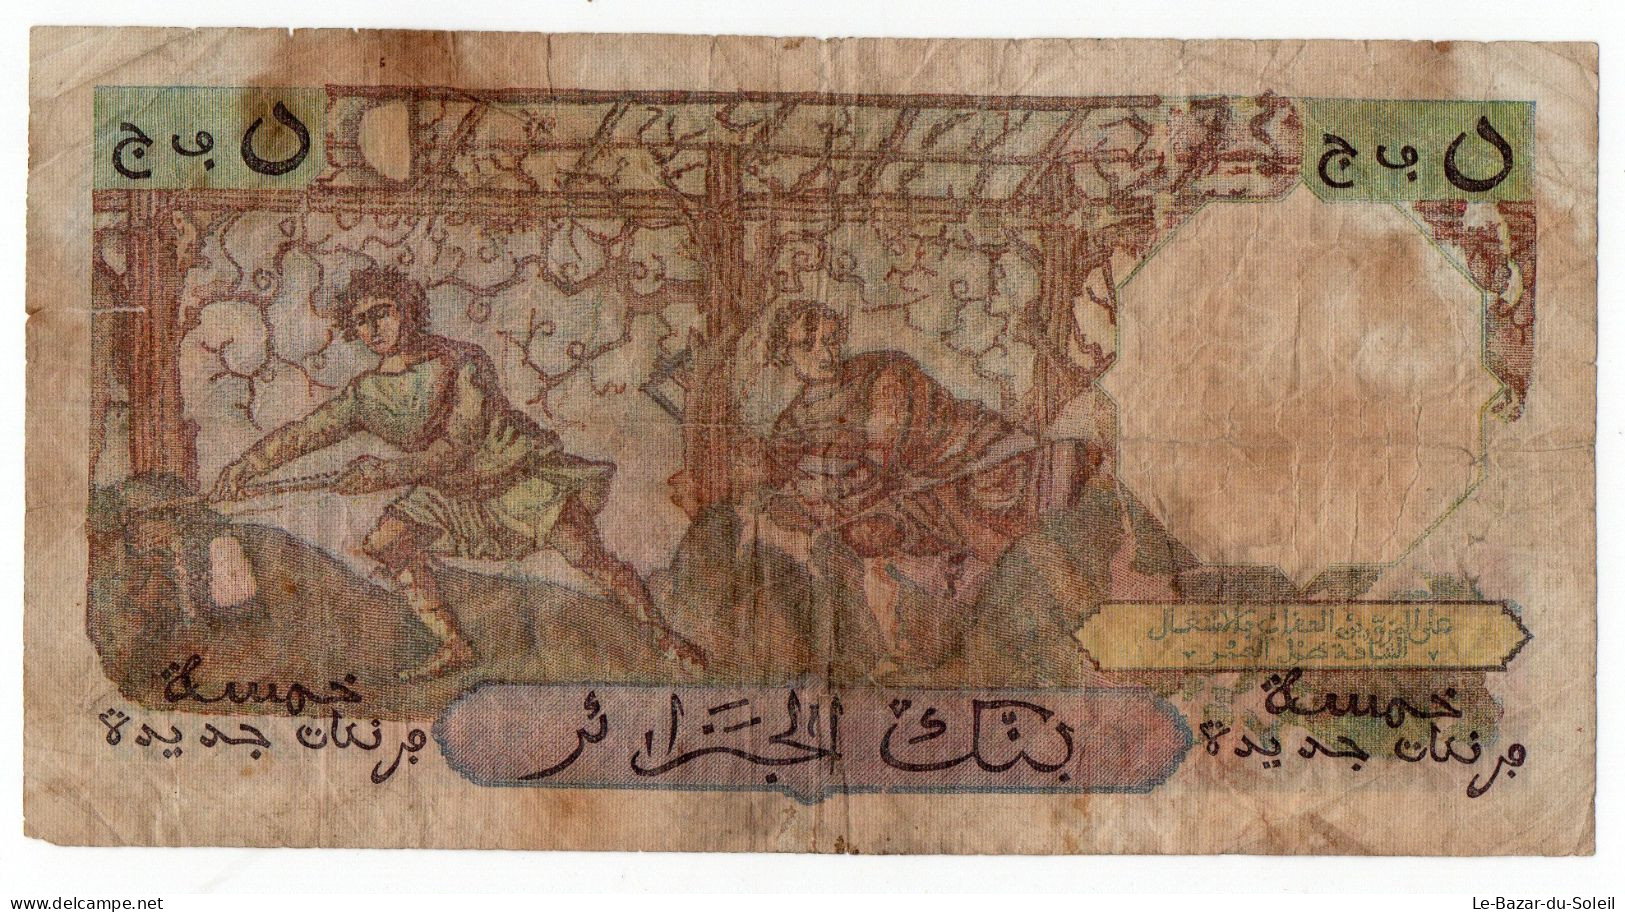 Billet, Algérie, 5 Nouveaux Francs 1959  5 NF Algerie 18/12/1959 - Algerije